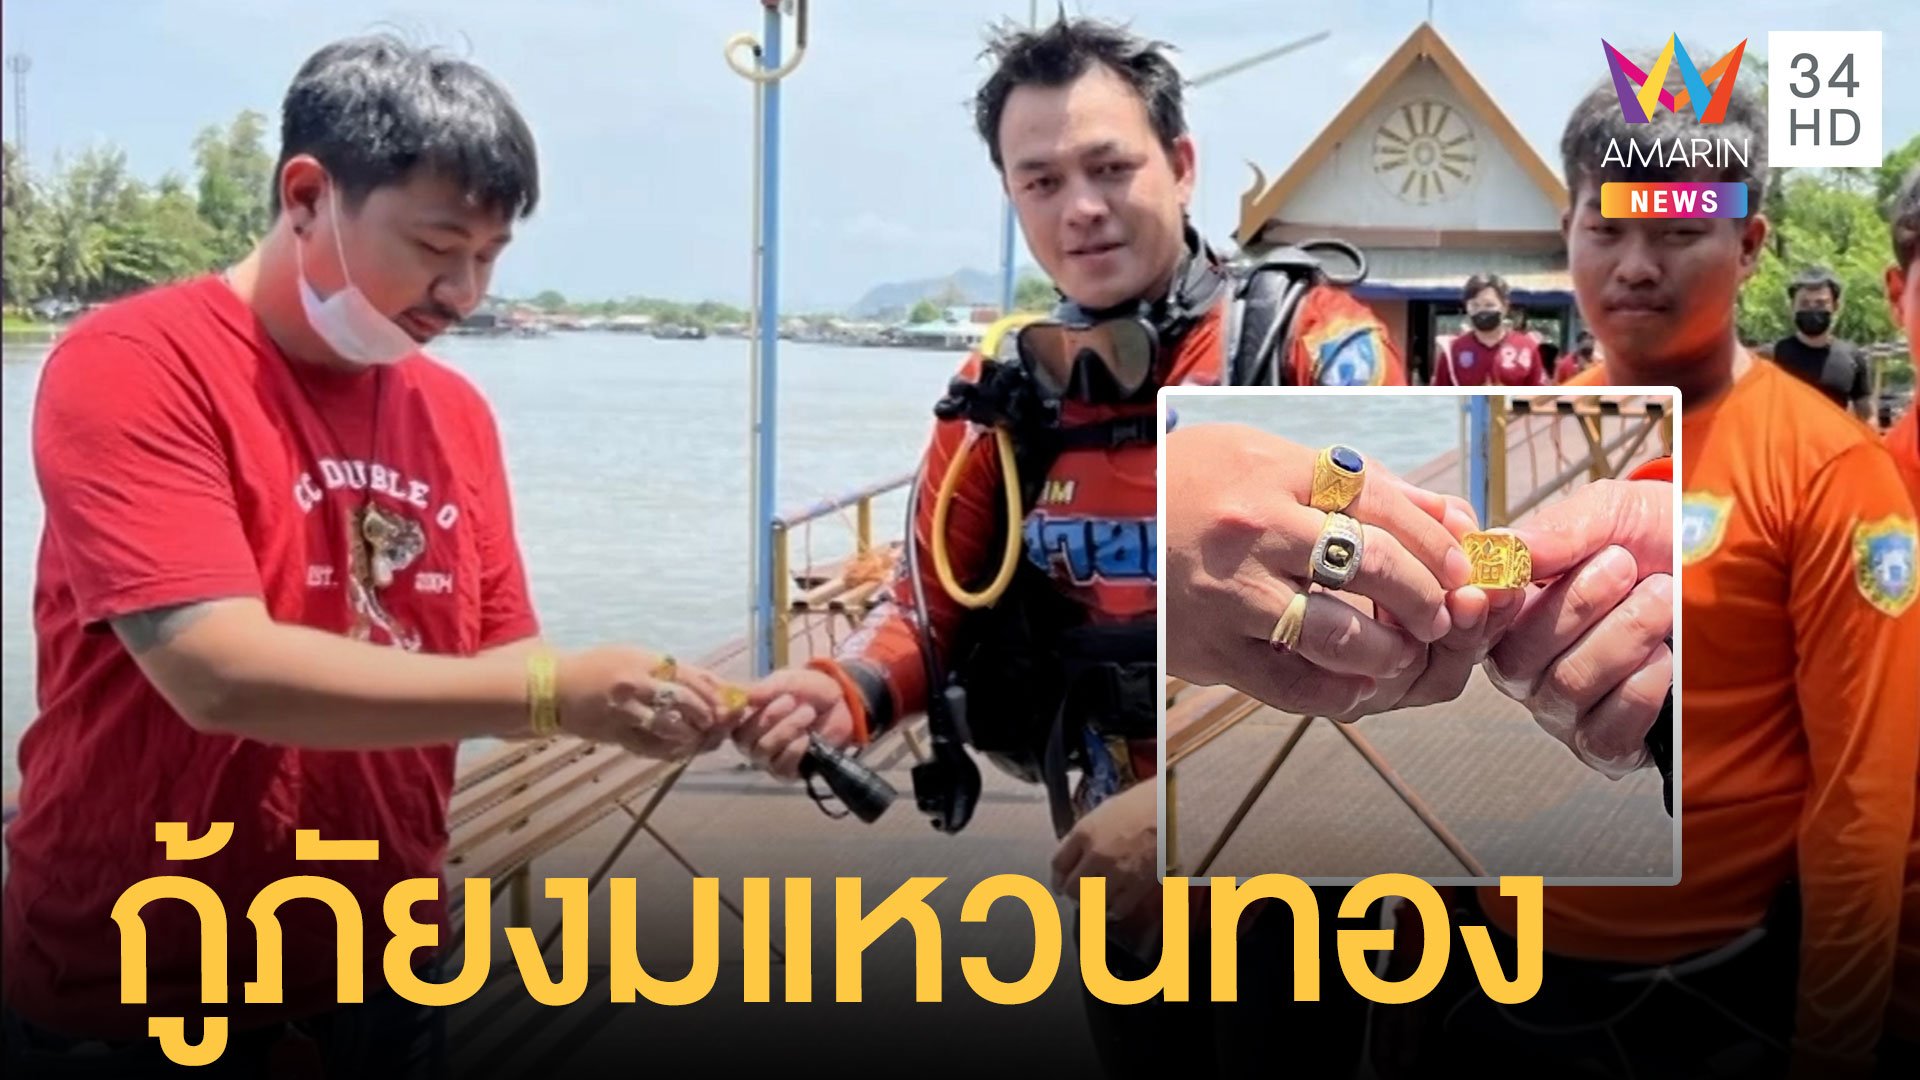 หนุ่มทำแหวนทอง 2 บาทตกแม่น้ำ กู้ภัยงมหาจนเจอ | ข่าวเที่ยงอมรินทร์ | 16 พ.ค. 65 | AMARIN TVHD34